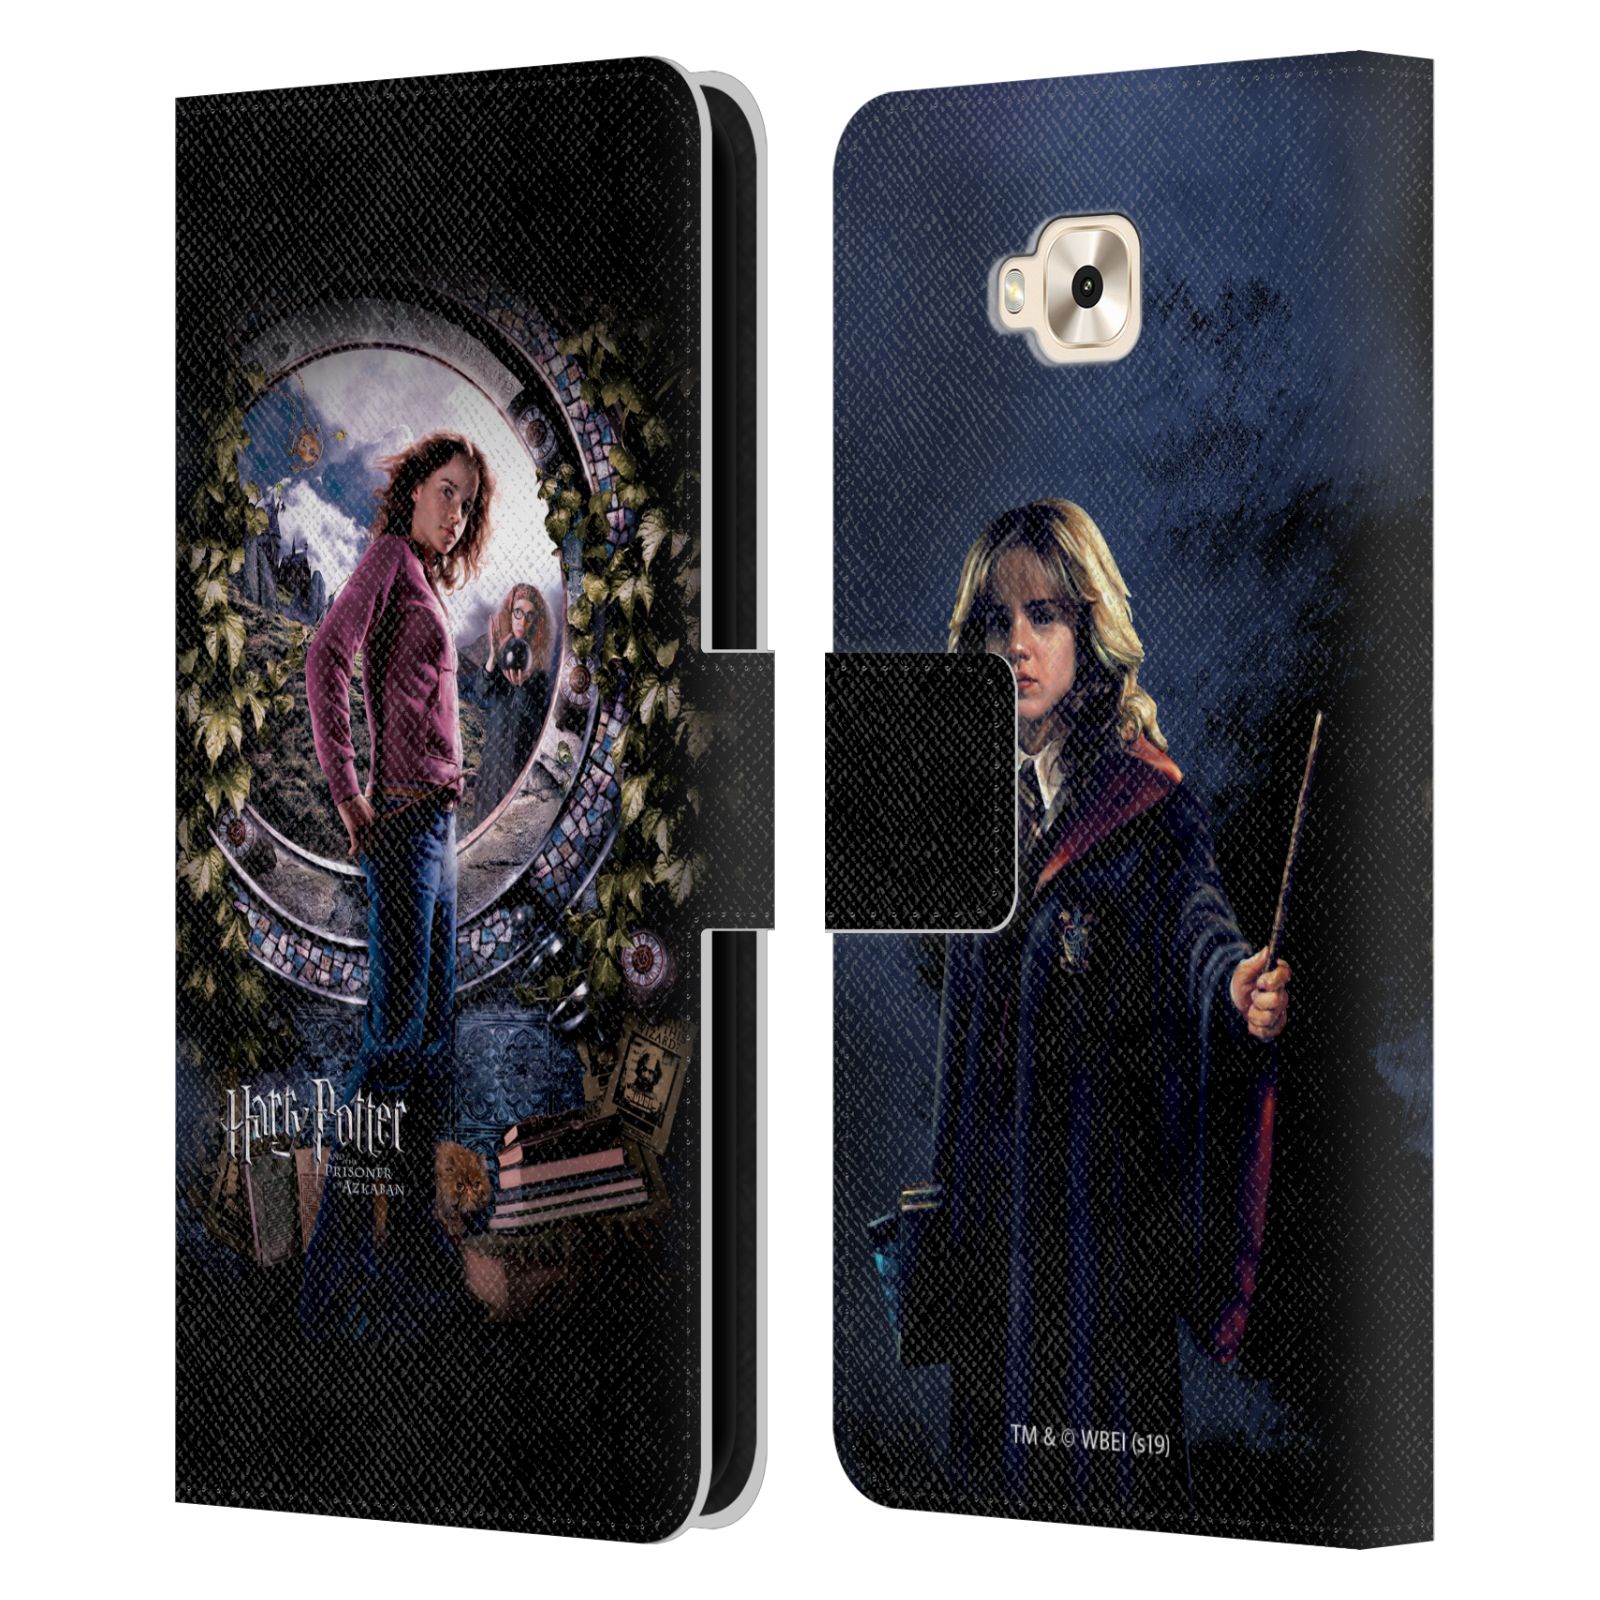 Pouzdro na mobil Asus Zenfone 4 Selfie ZD553KL  - HEAD CASE - Harry Potter - Vězeň z Azkabanu - Hermiona